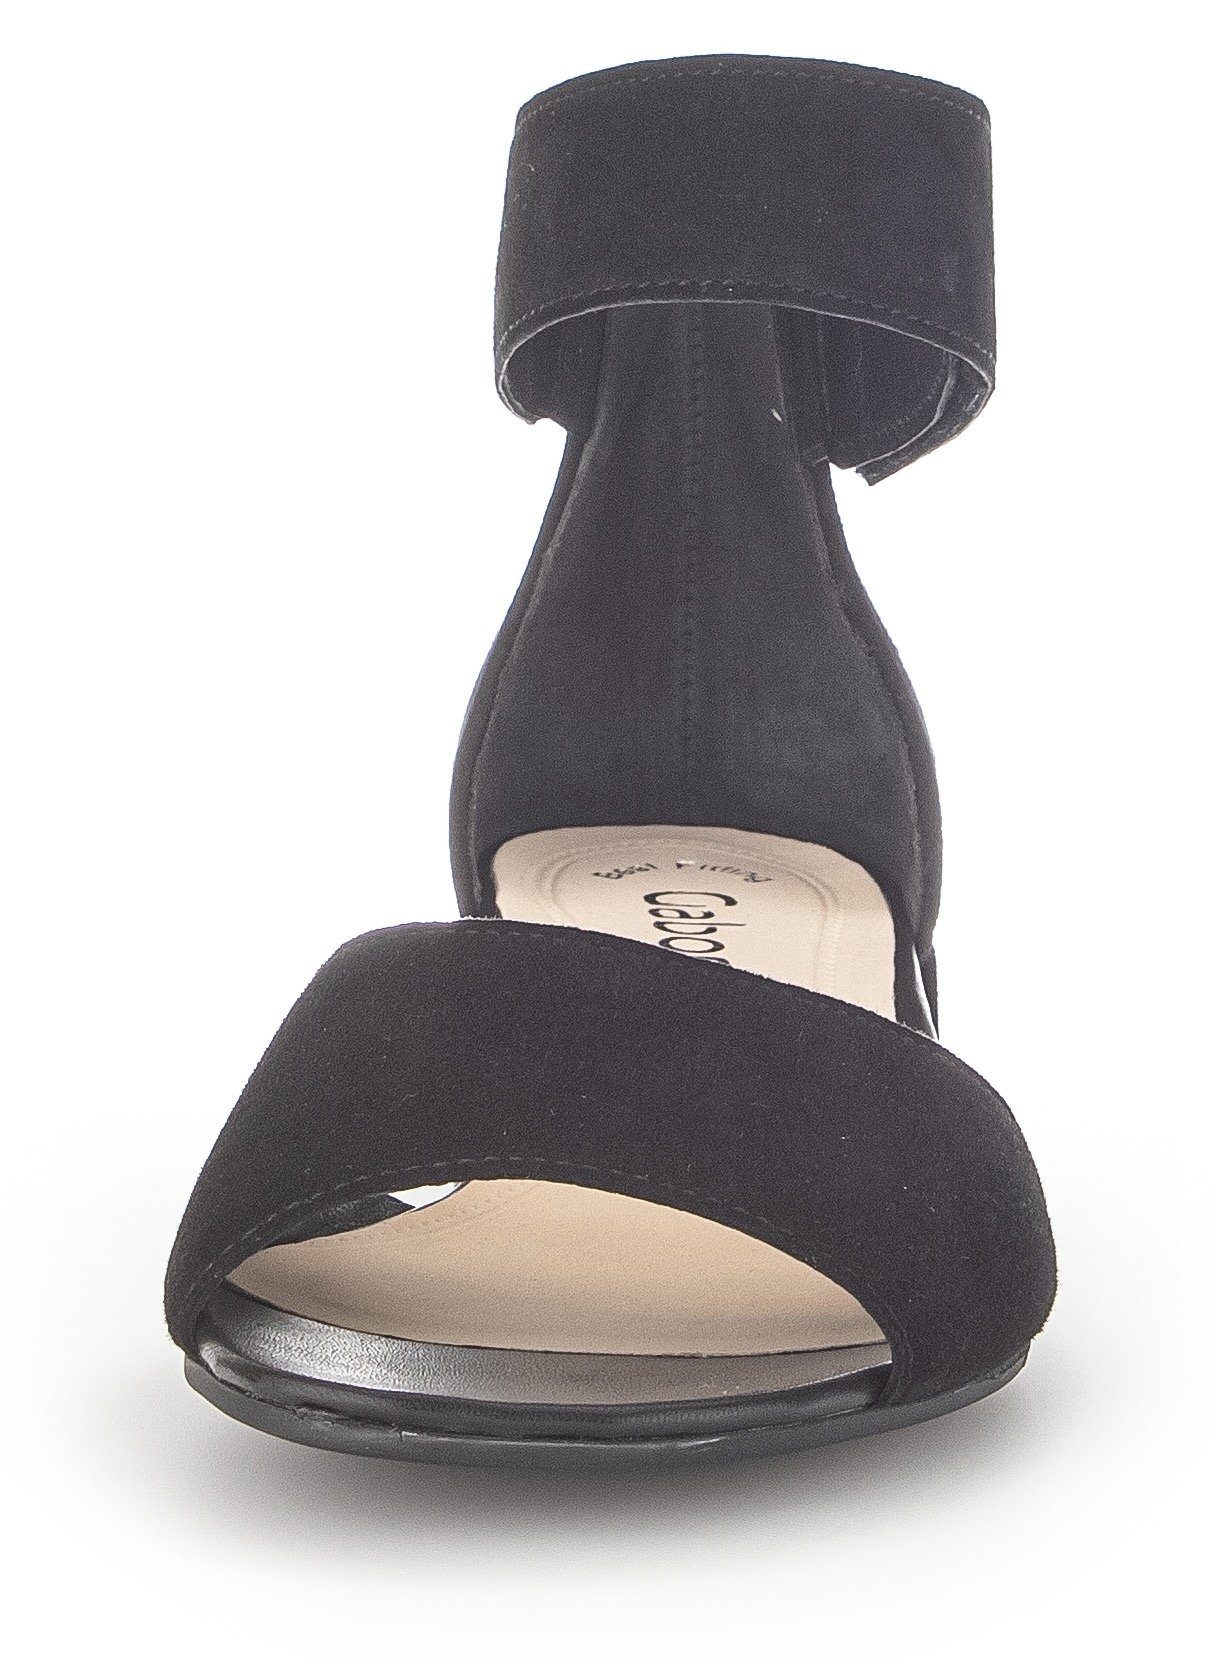 Sandalette regulierbarem Klettverschluss schwarz Gabor mit